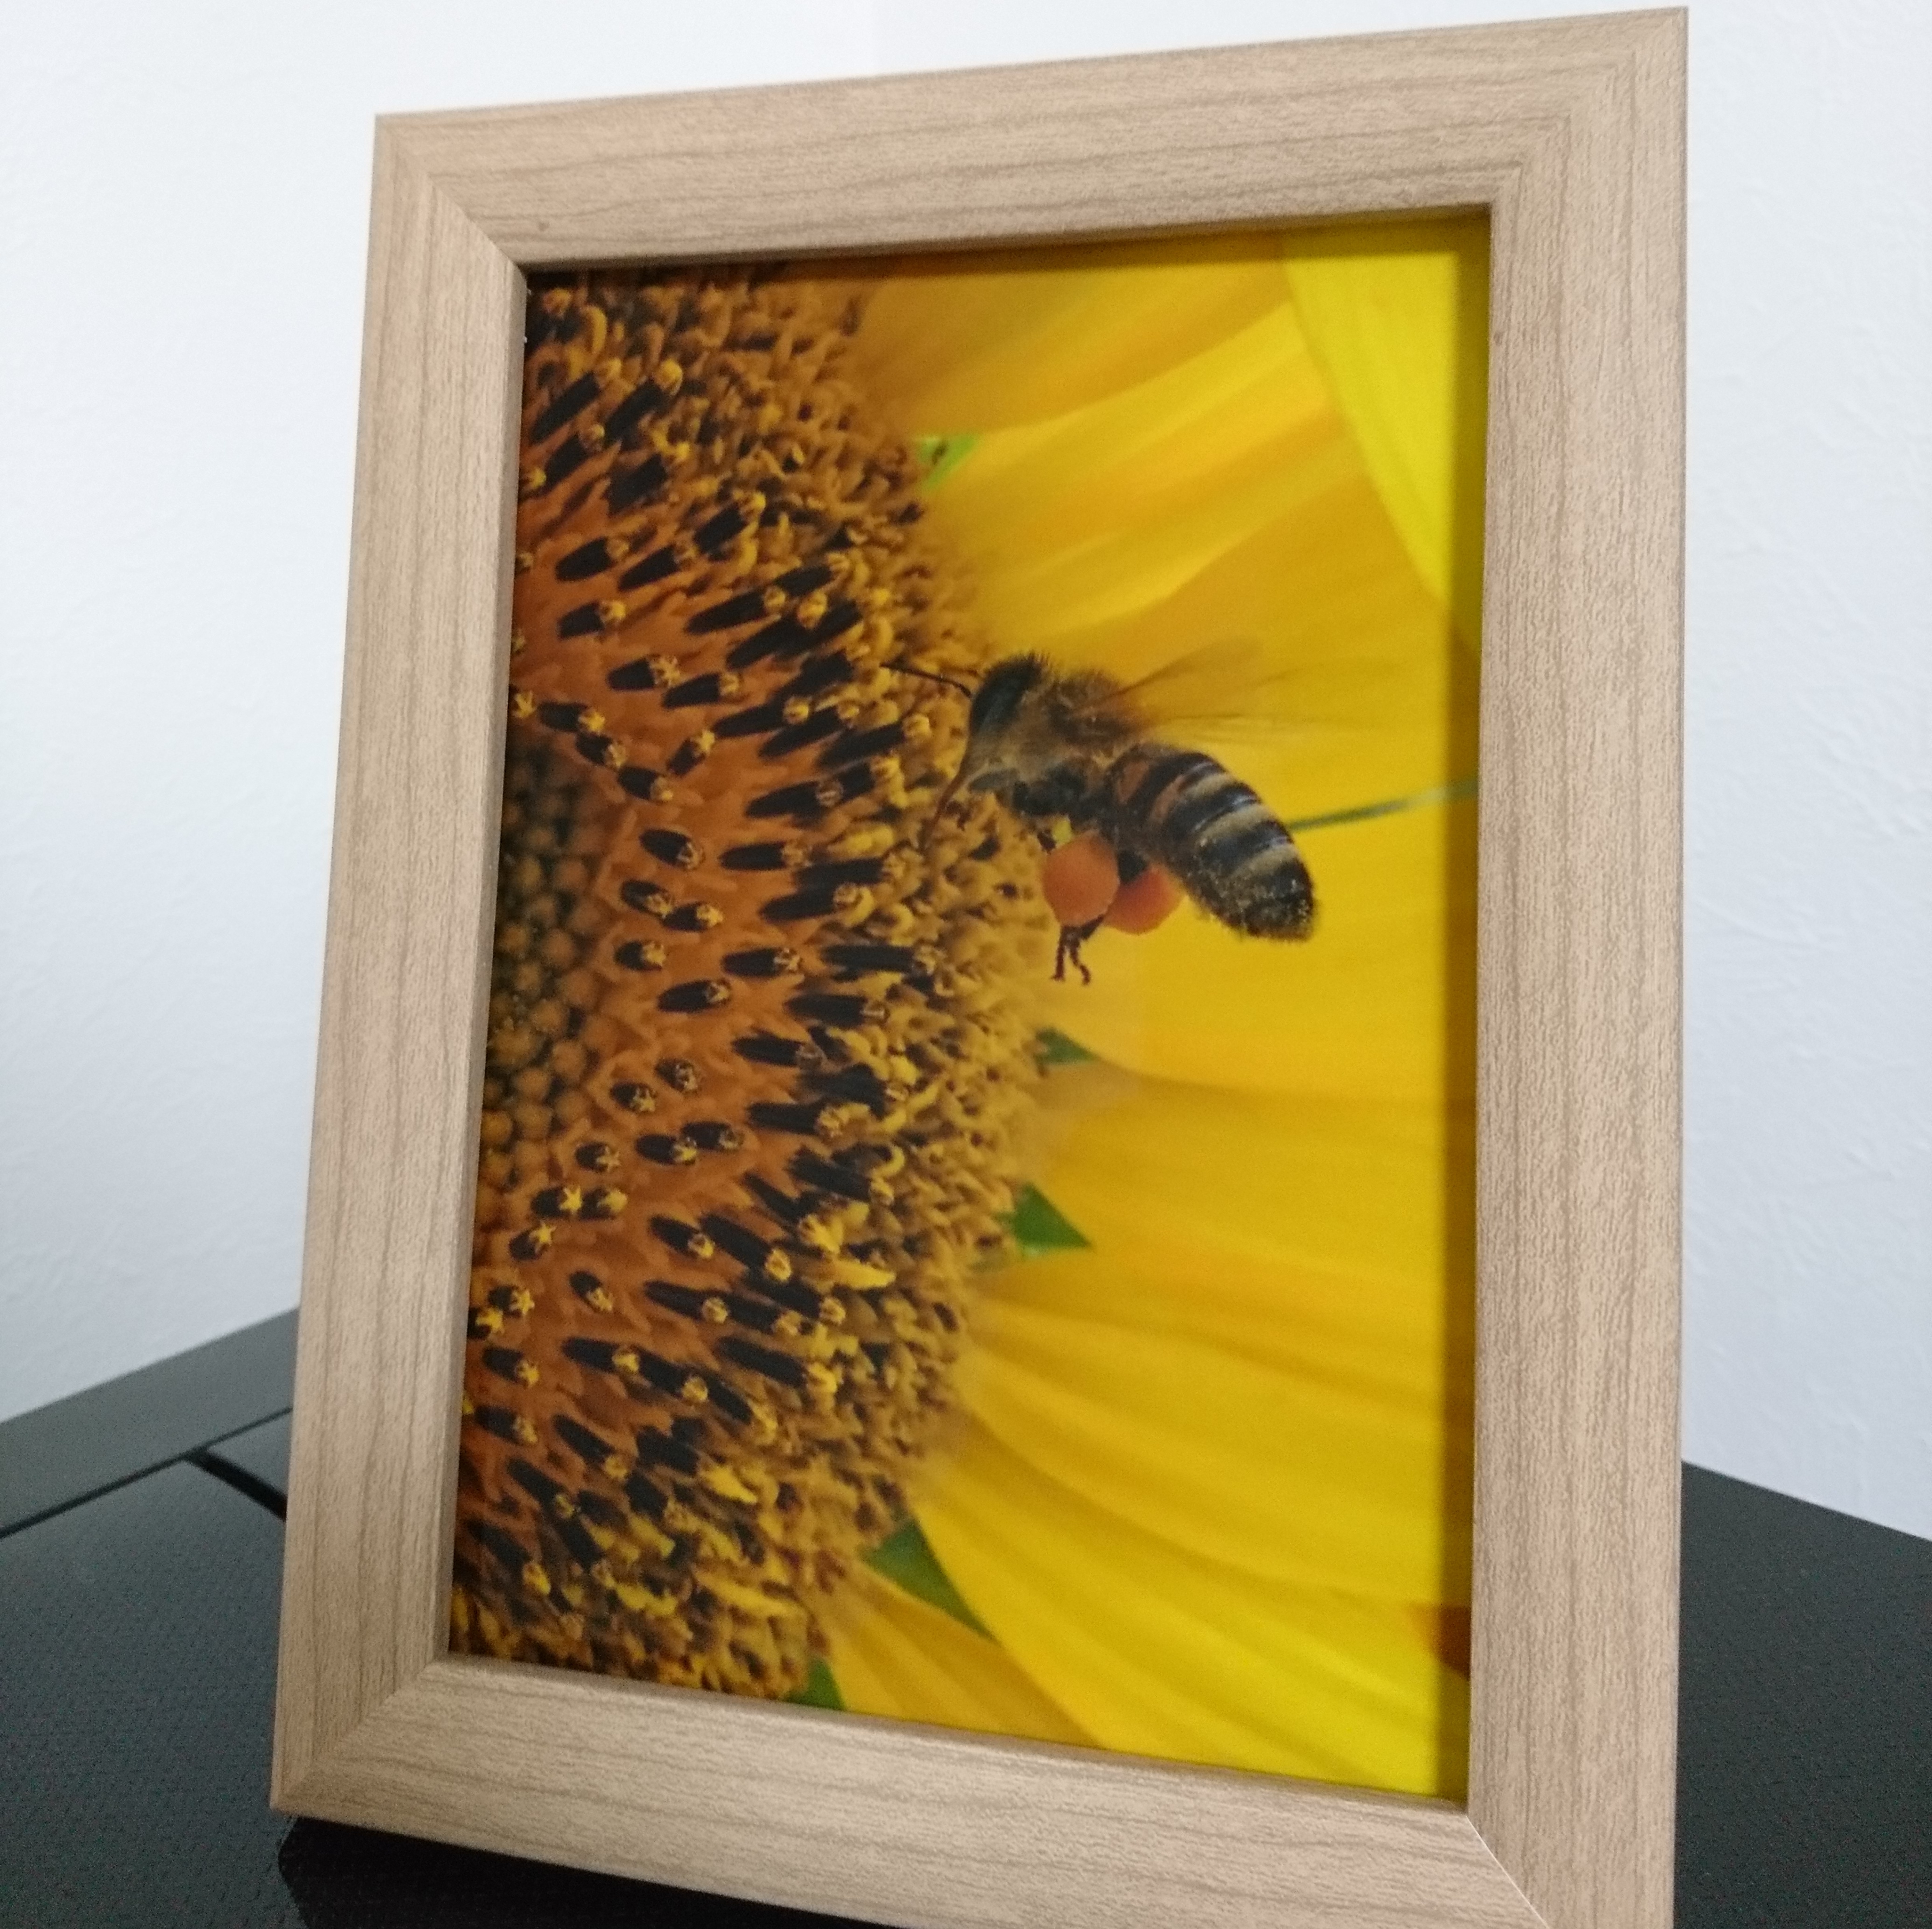 ミツバチ 花粉団子 ハチのいる暮らし 2l判サイズ光沢写真縦 写真のみ 花写真 蜂写真 Iichi ハンドメイド クラフト作品 手仕事品の通販